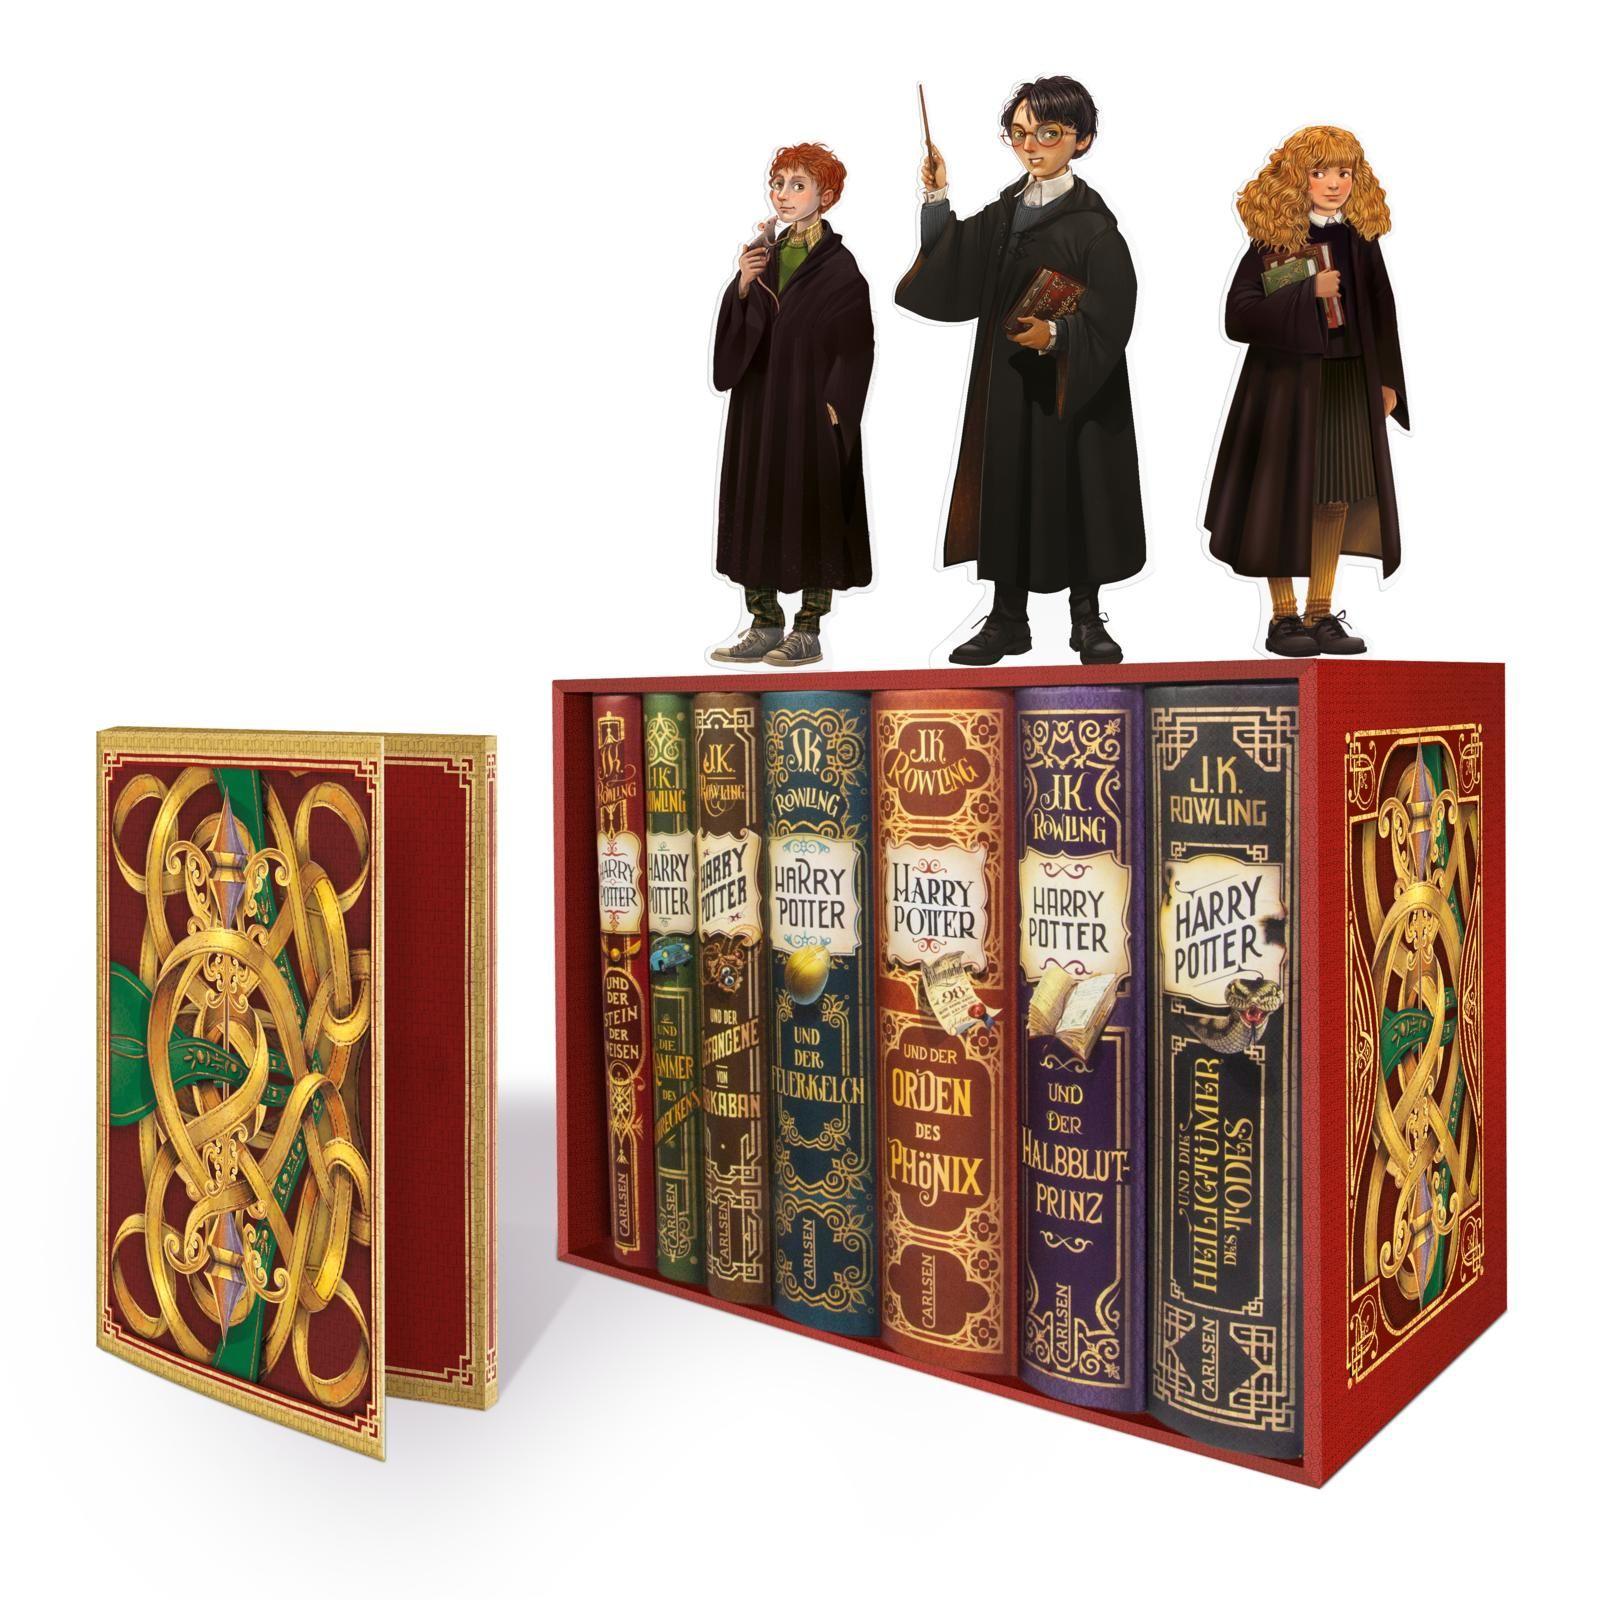 Harry Potter: Band 1-7 im Schuber – mit exklusivem Extra! (Harry Potter) Alle Bücher des modernen Kinderbuch-Klassikers ab 10 Jahren für Zauberlehrlinge und Fans der magischen Hogwarts-Welt